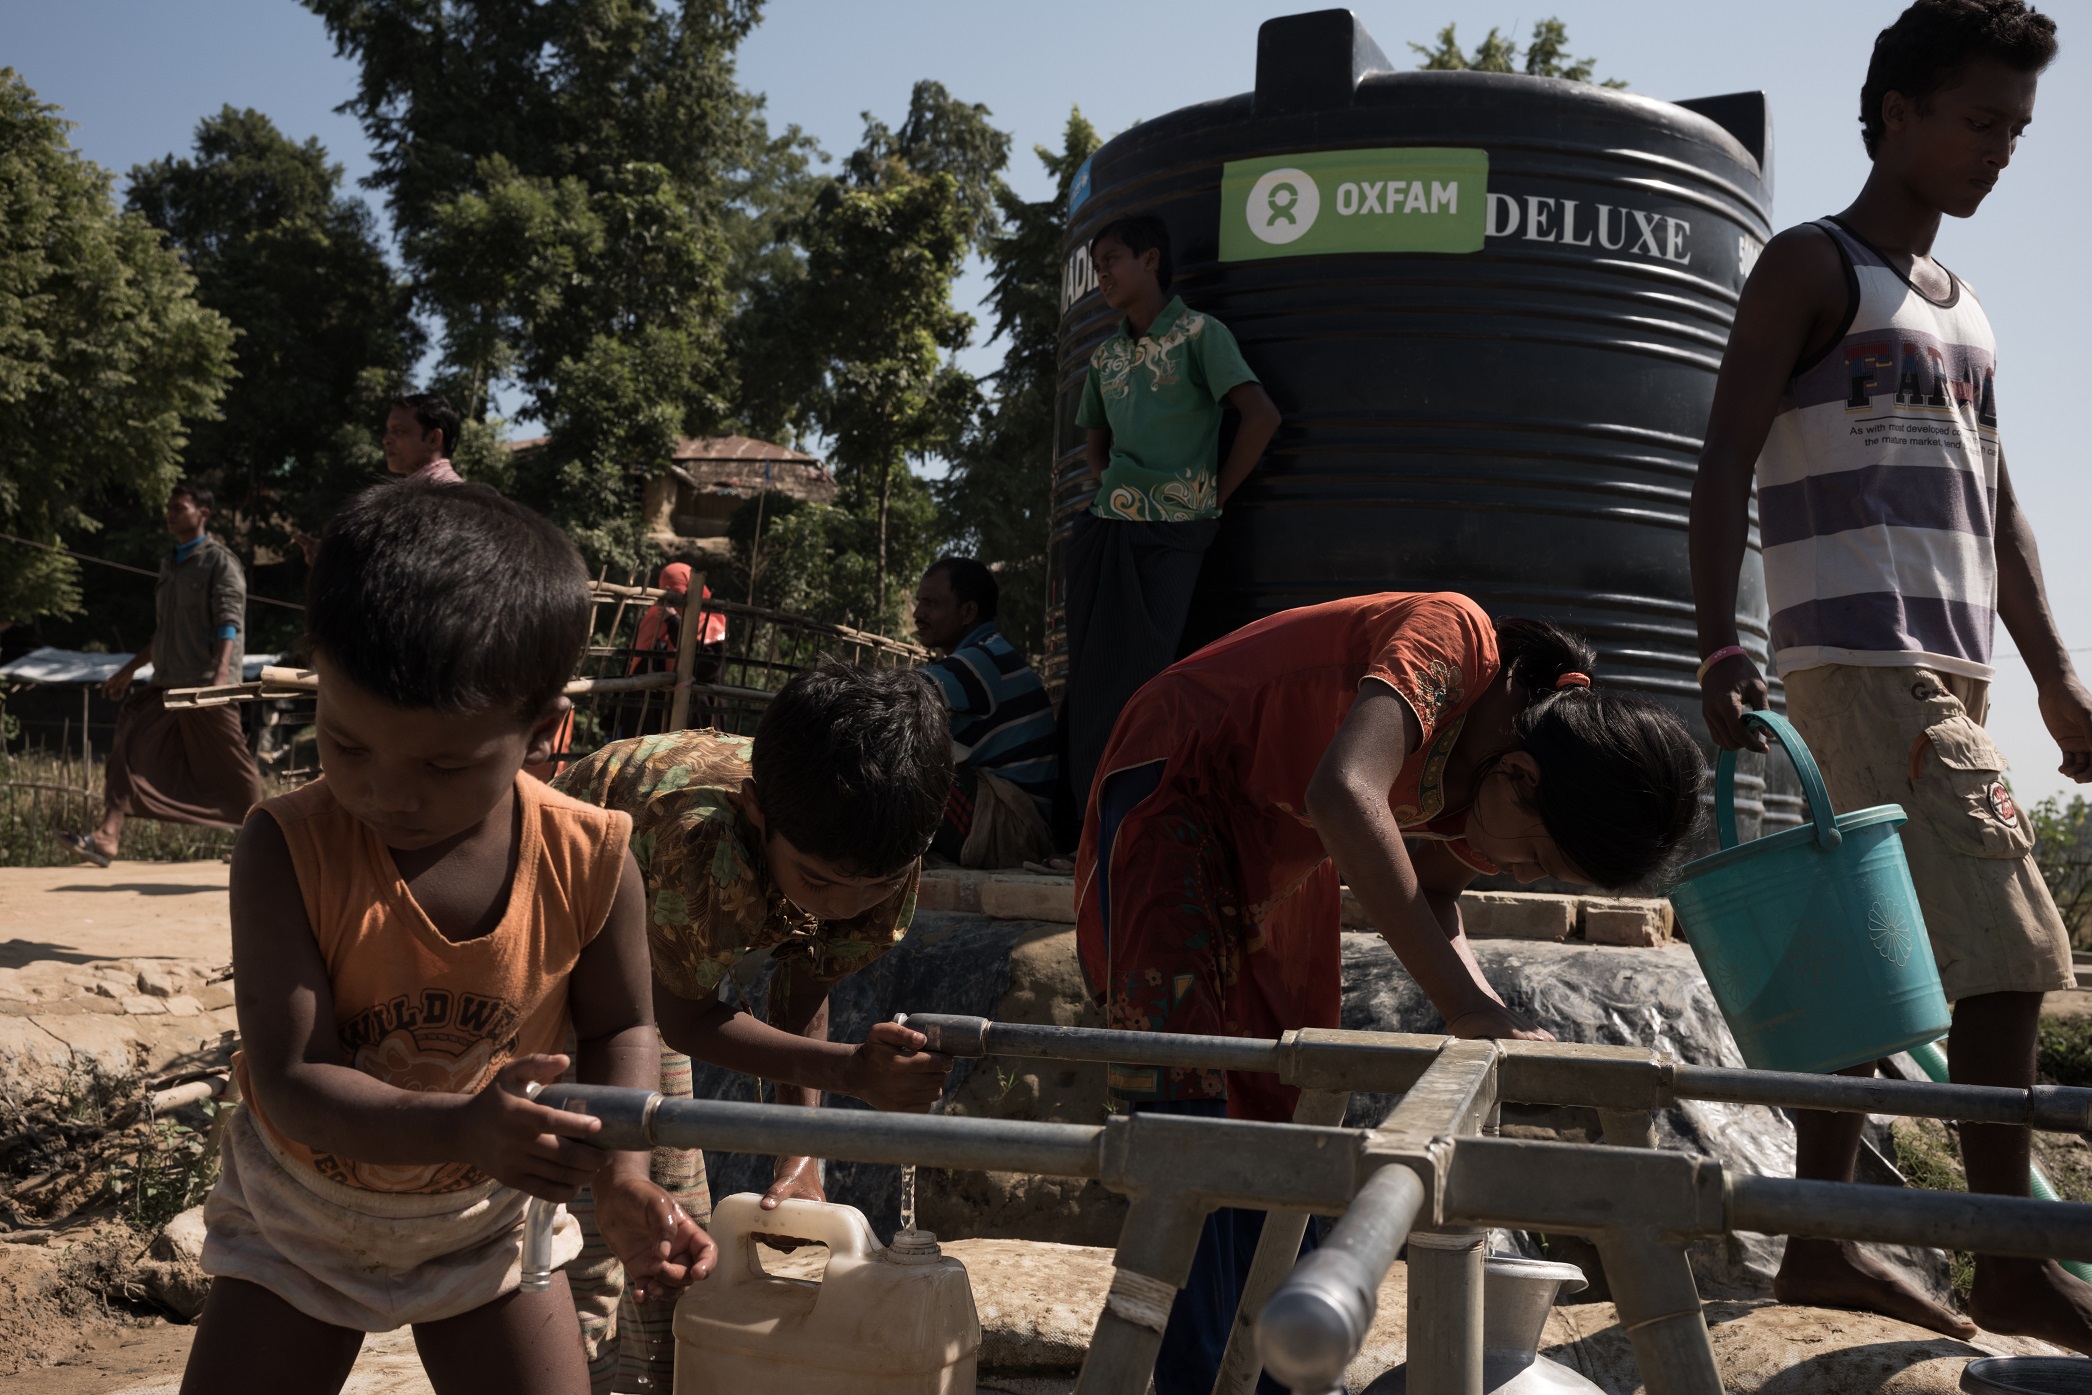 樂施會正為難民搭建貯水塔、提供食水和衞生設施。